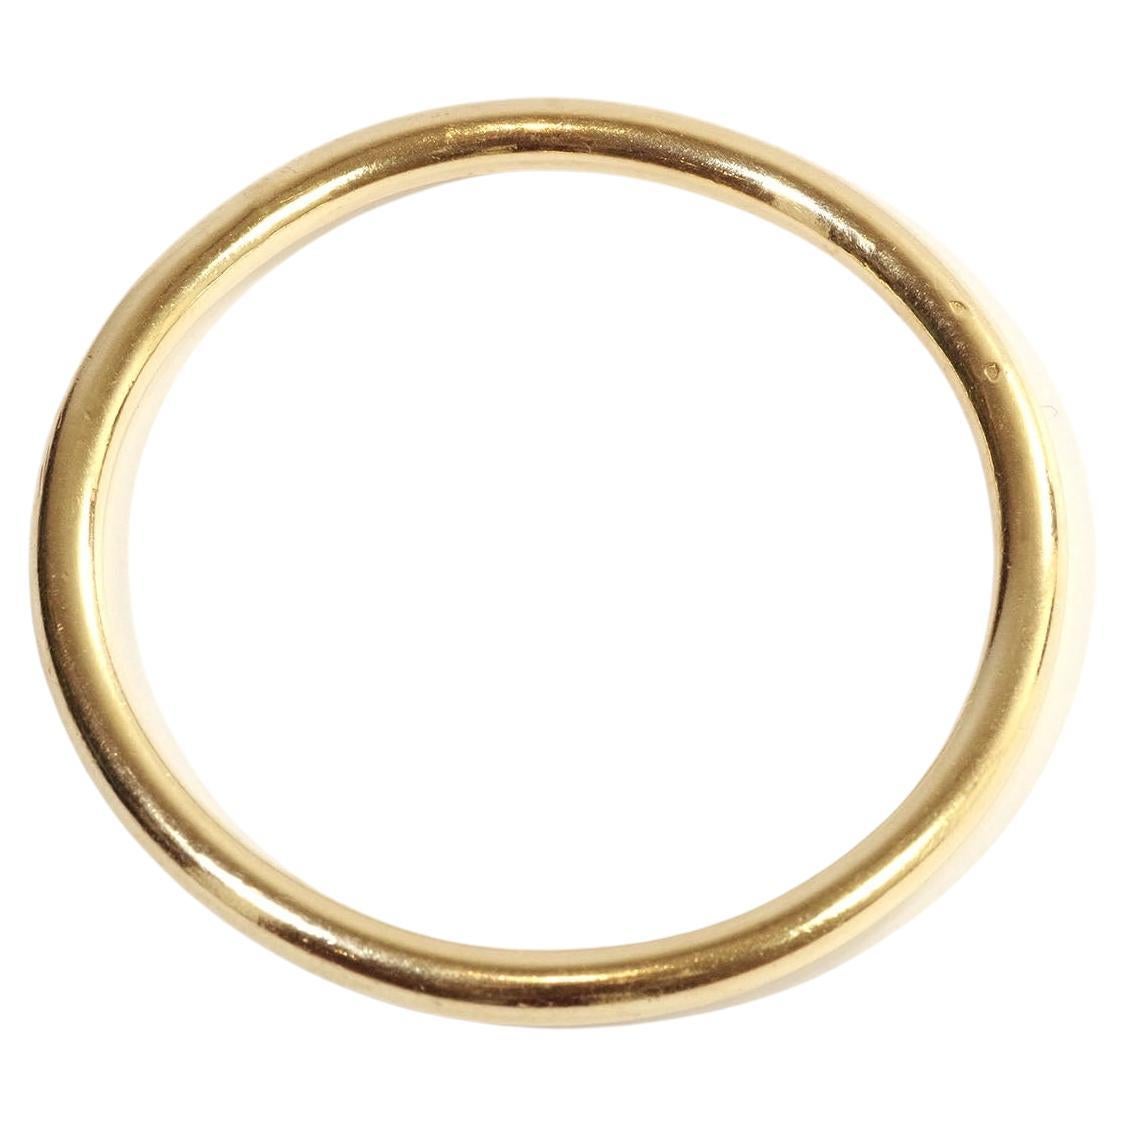 Solid gold bangle bracelet in 18k gold For Sale